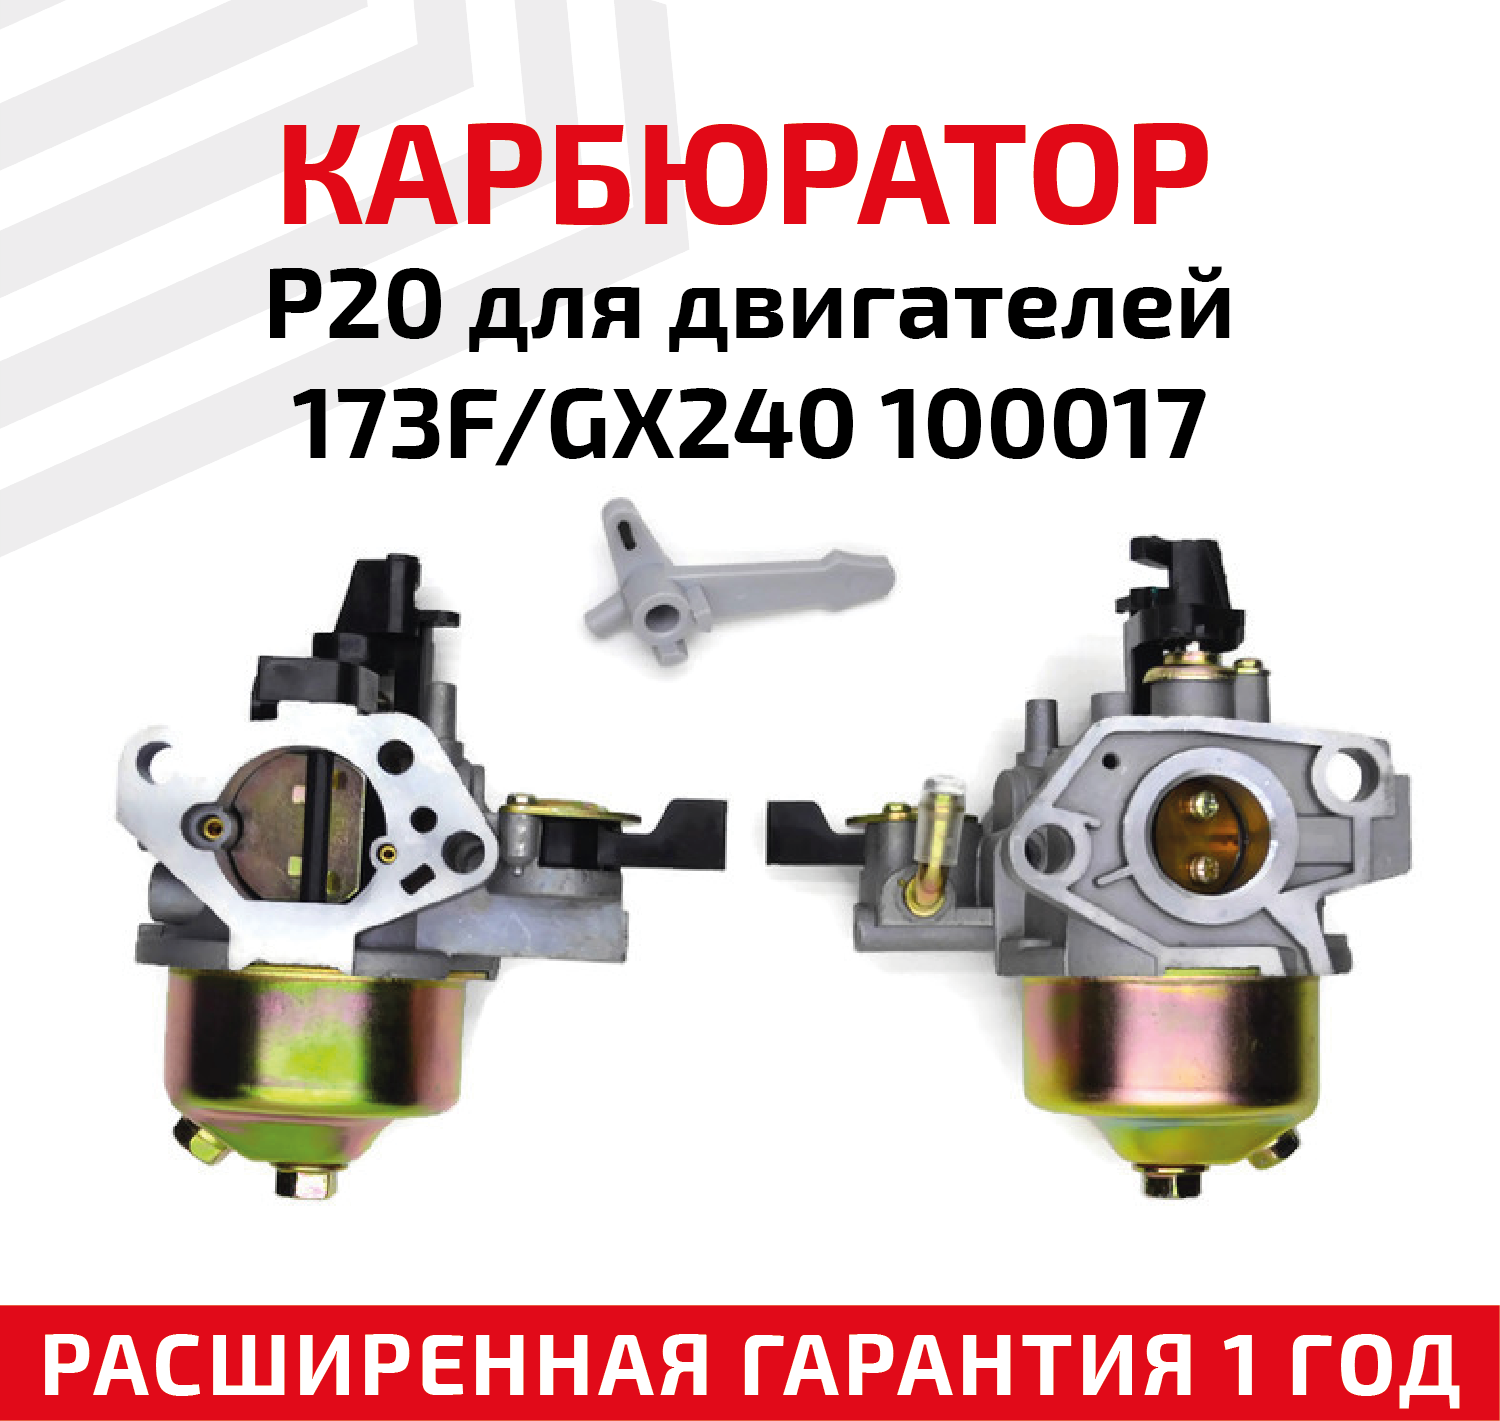 Карбюратор P20 для двигателей 173F/GX240 100017